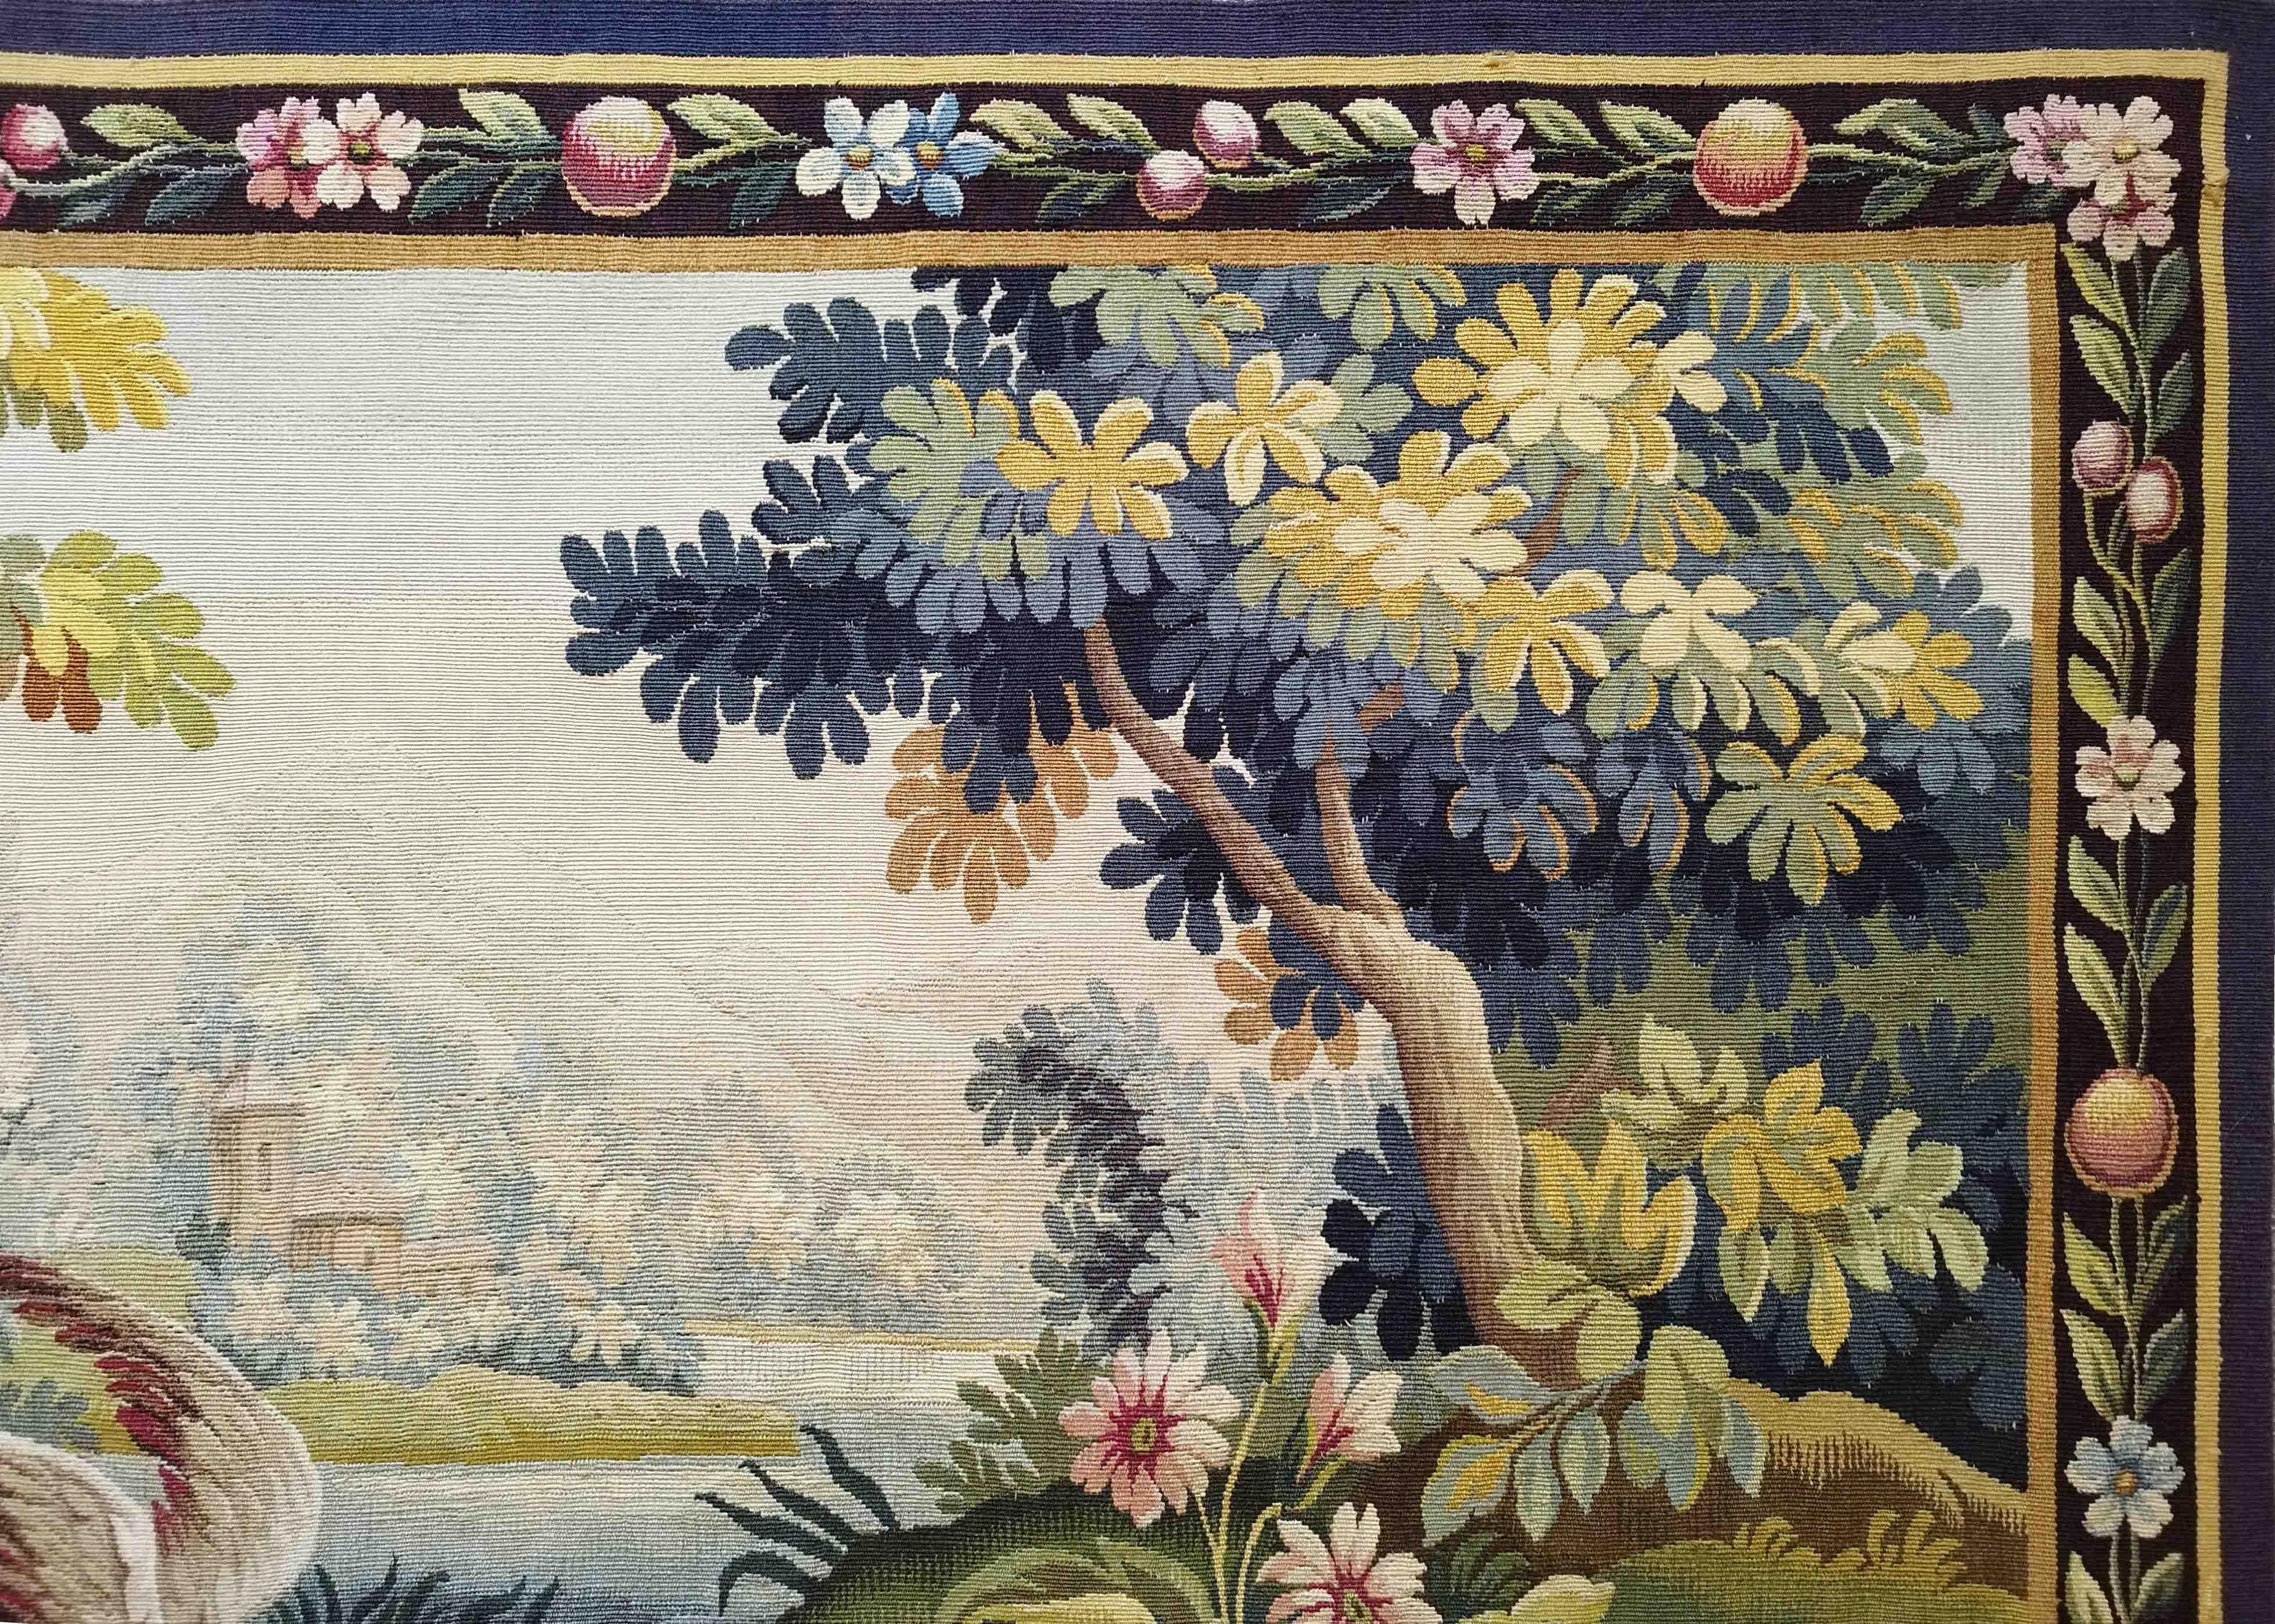 Tapisserie d'Aubusson du 19ème siècle Aubusson - N° 1236

Grâce à notre atelier de restauration-conservation et aussi à notre savoir-faire, 
nous avons le plaisir de vous présenter des œuvres d'art en tissu telles que la tapisserie, 
Tapis et